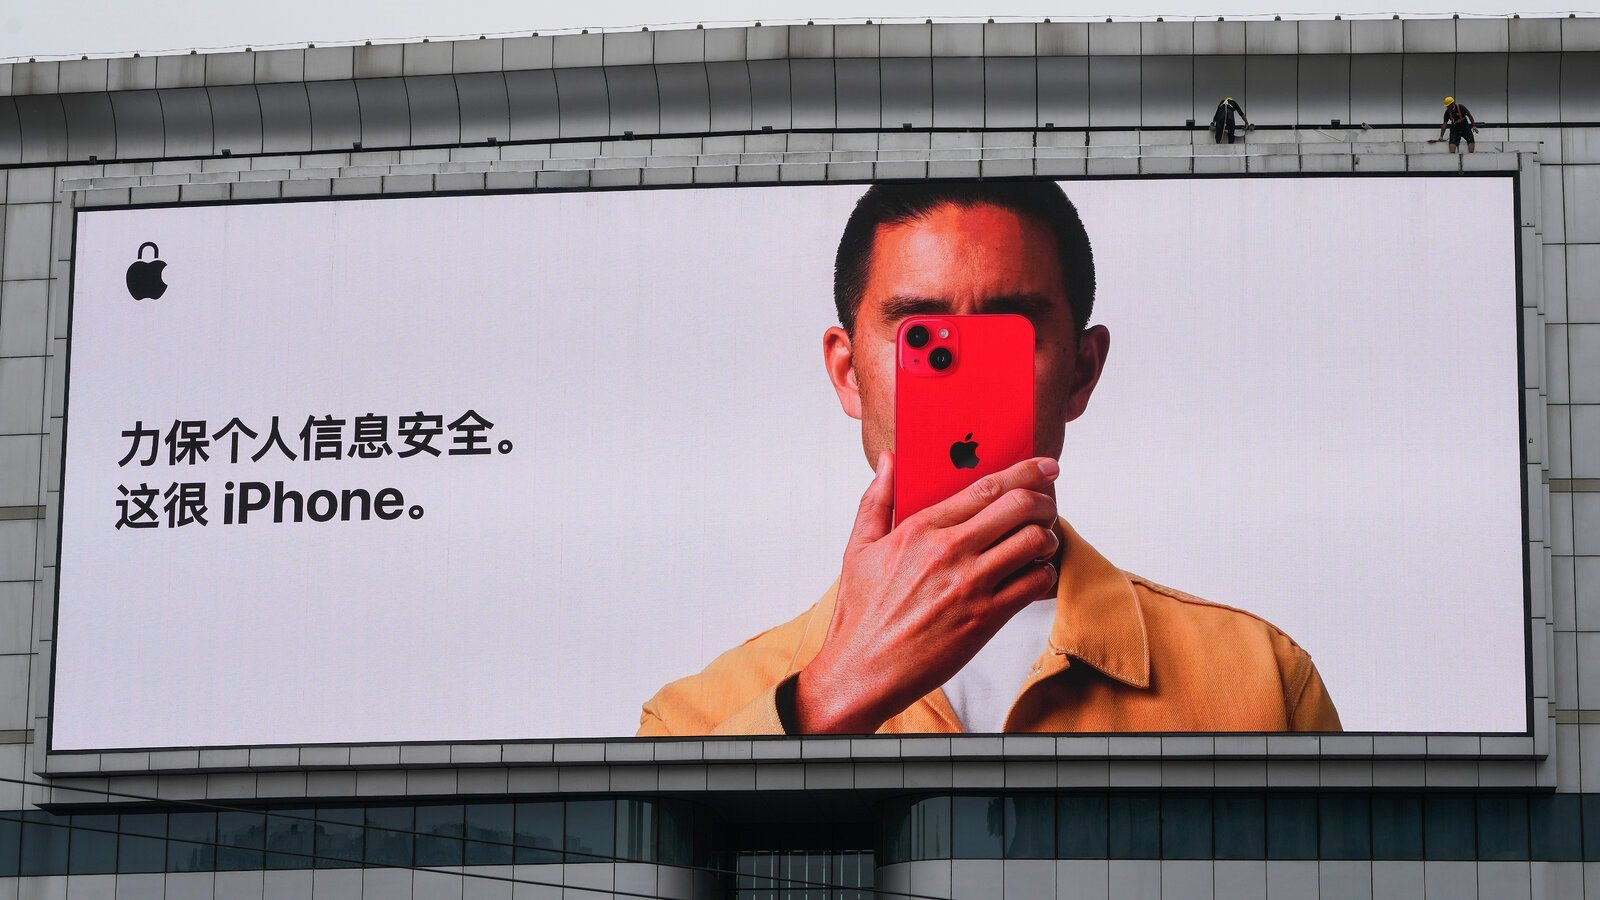 "3,5 tỷ USD của Apple sắp đến tay người dùng iPhone, sao lại trừ chúng ta?" - Người Trung Quốc than vãn - Ảnh 1.